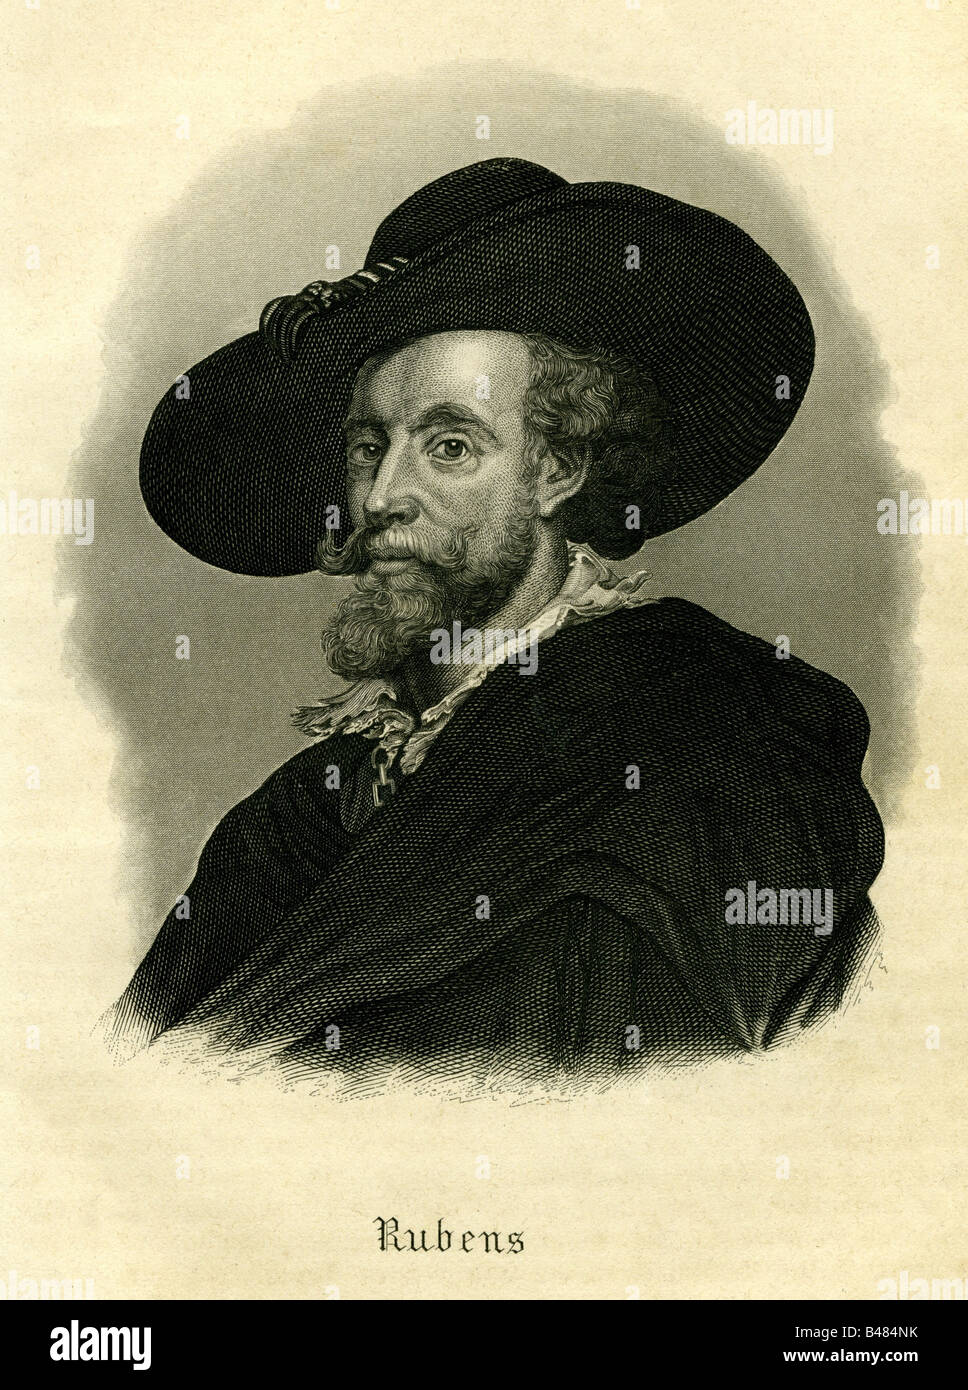 Rubens, Pietro Paolo, 28.6.1577 - 30.5.1640, pittore olandese, ritratto con cappello, acciaio, incisione del XIX secolo, l'artista del diritto d'autore non deve essere cancellata Foto Stock